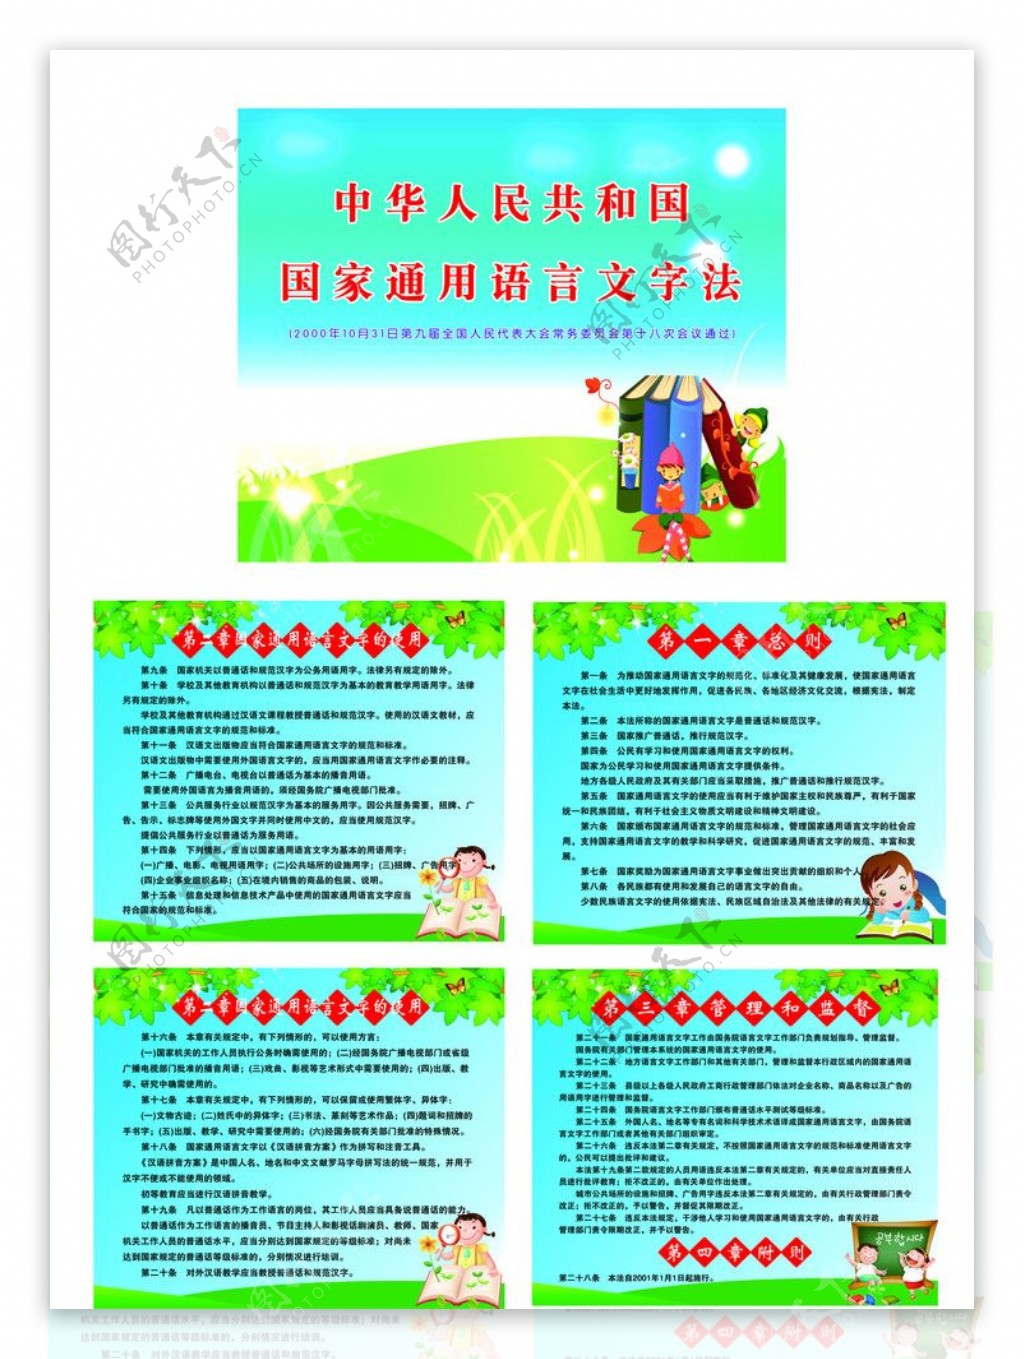 中华人民共和国国家通用语言文字法图片